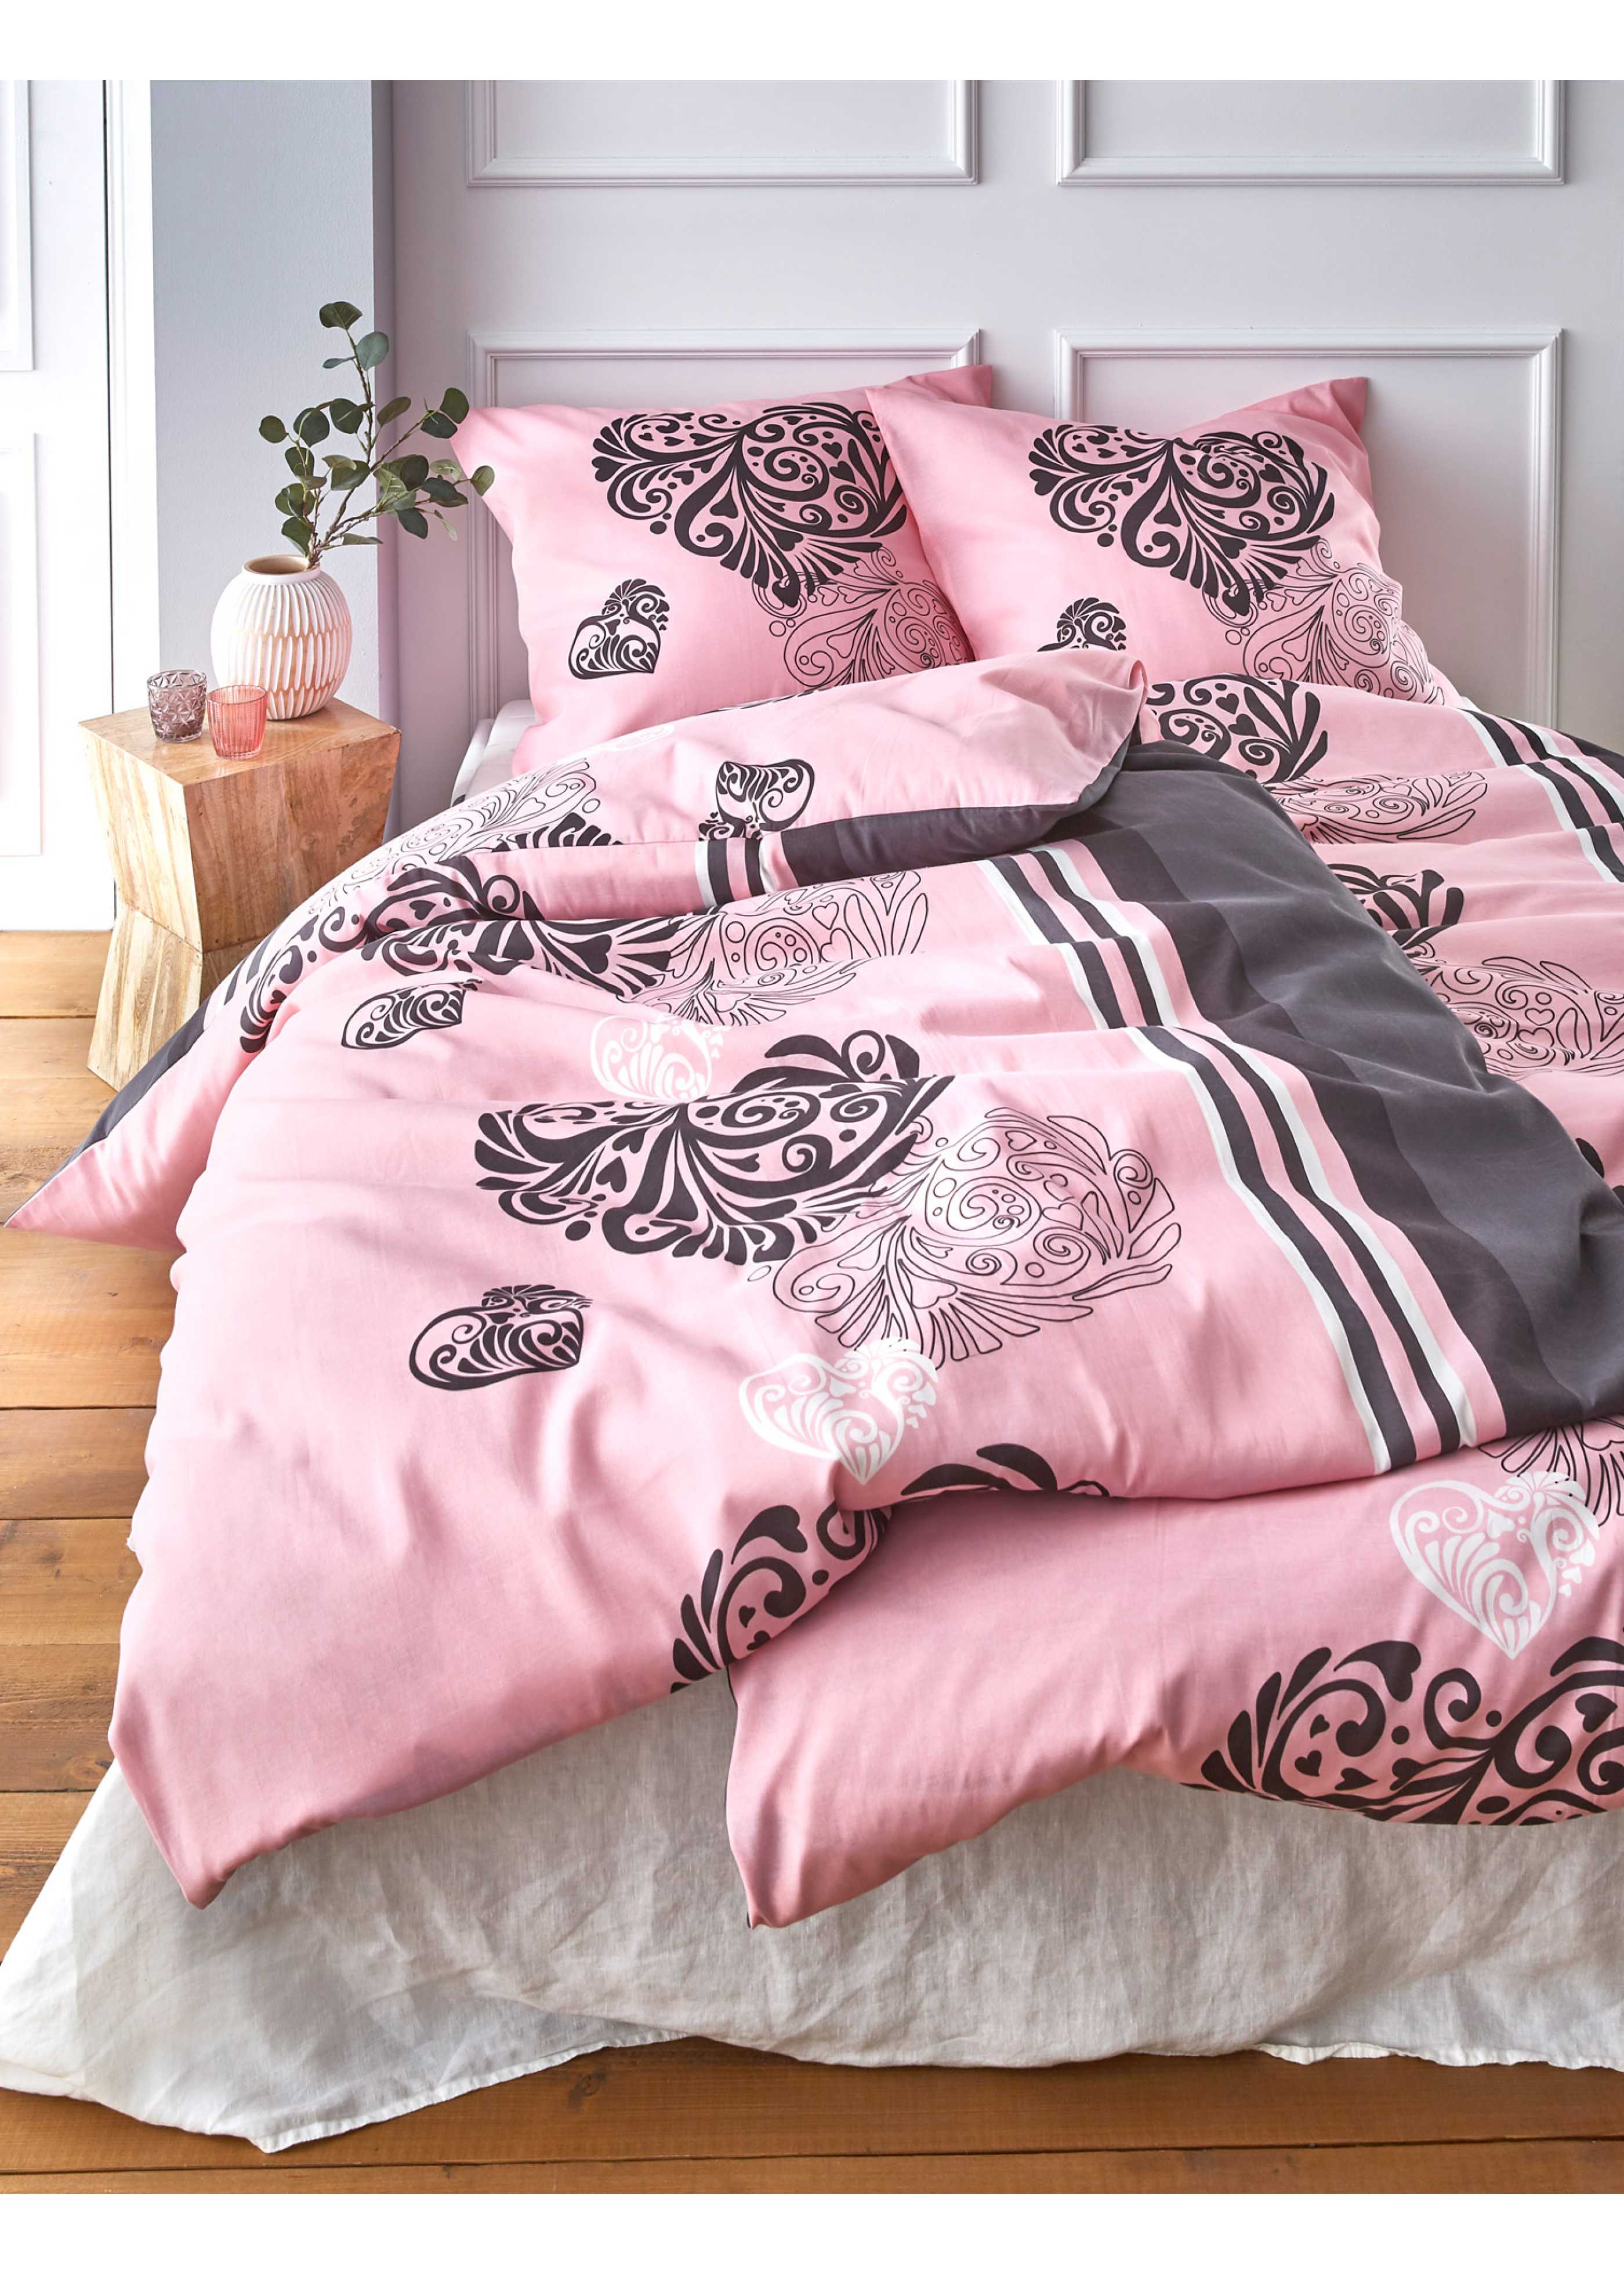 Floral Bedruckt Polyester Baumwolle Canterbury Bettdecke Bettbezug Set 